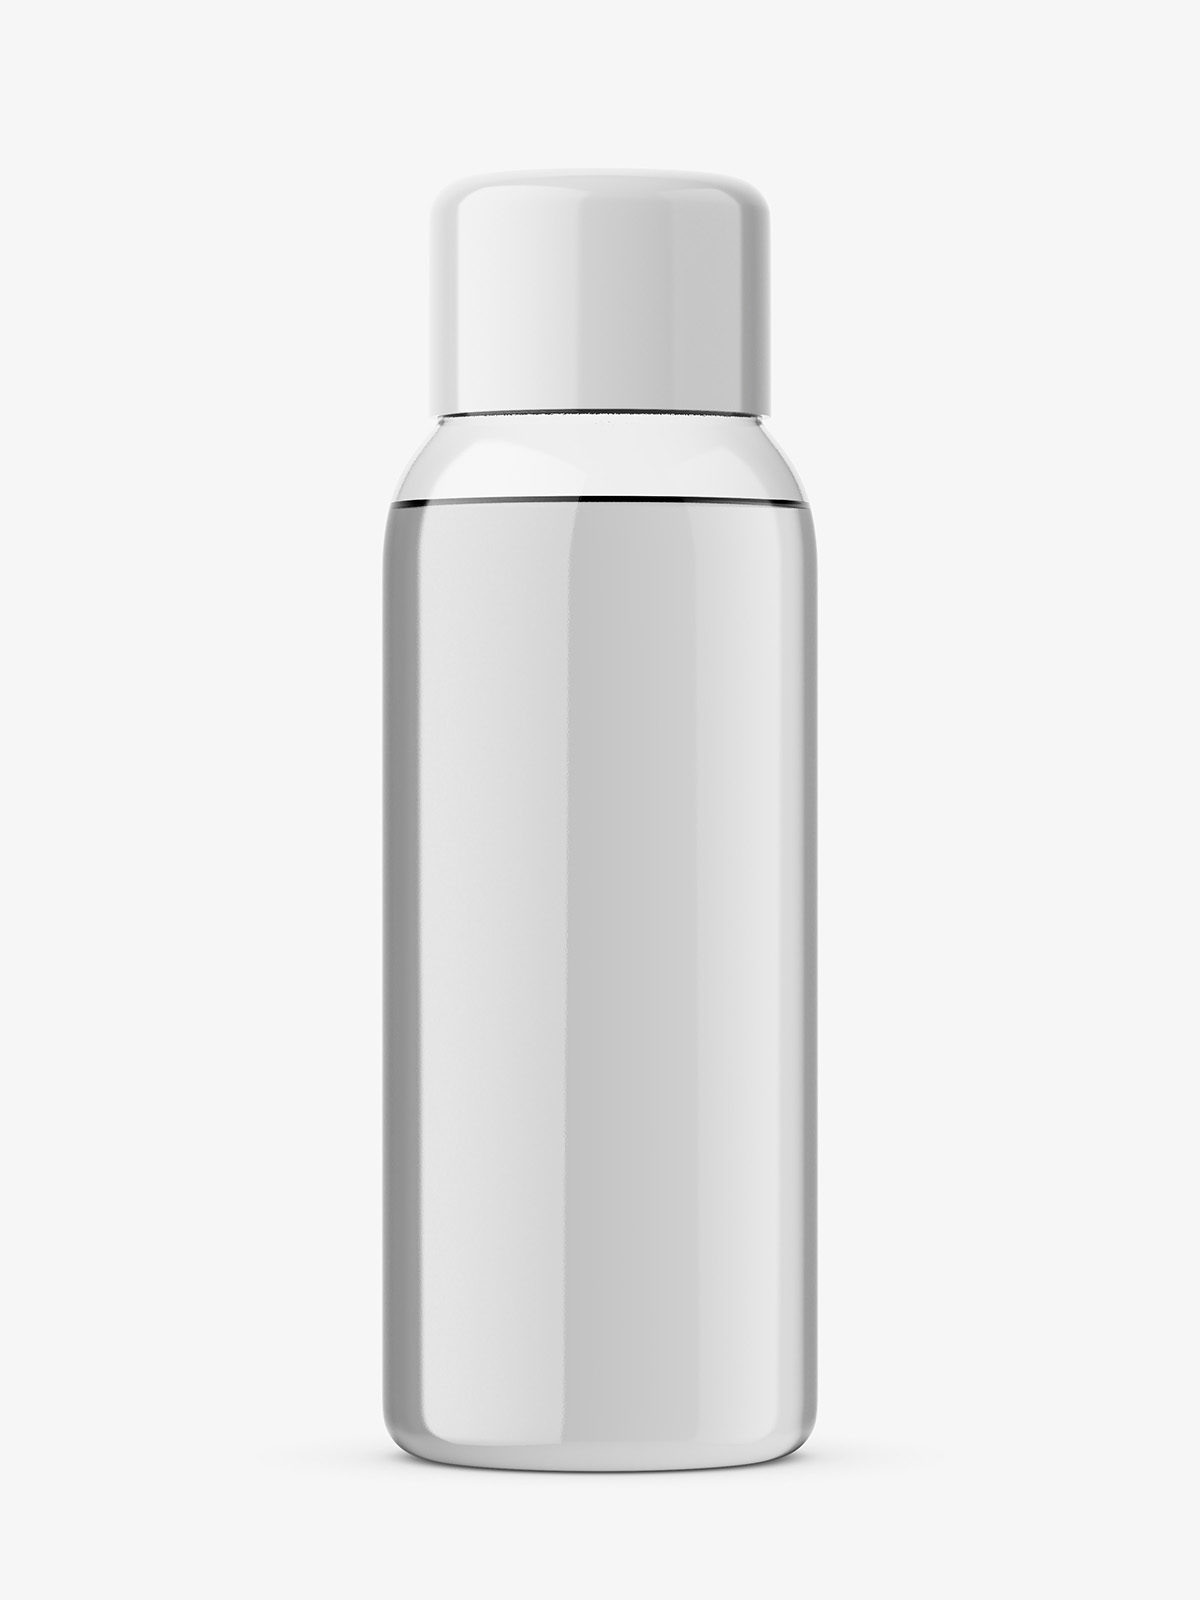 Download 30 Ml Bottle Mockup Transparent Smarty Mockups